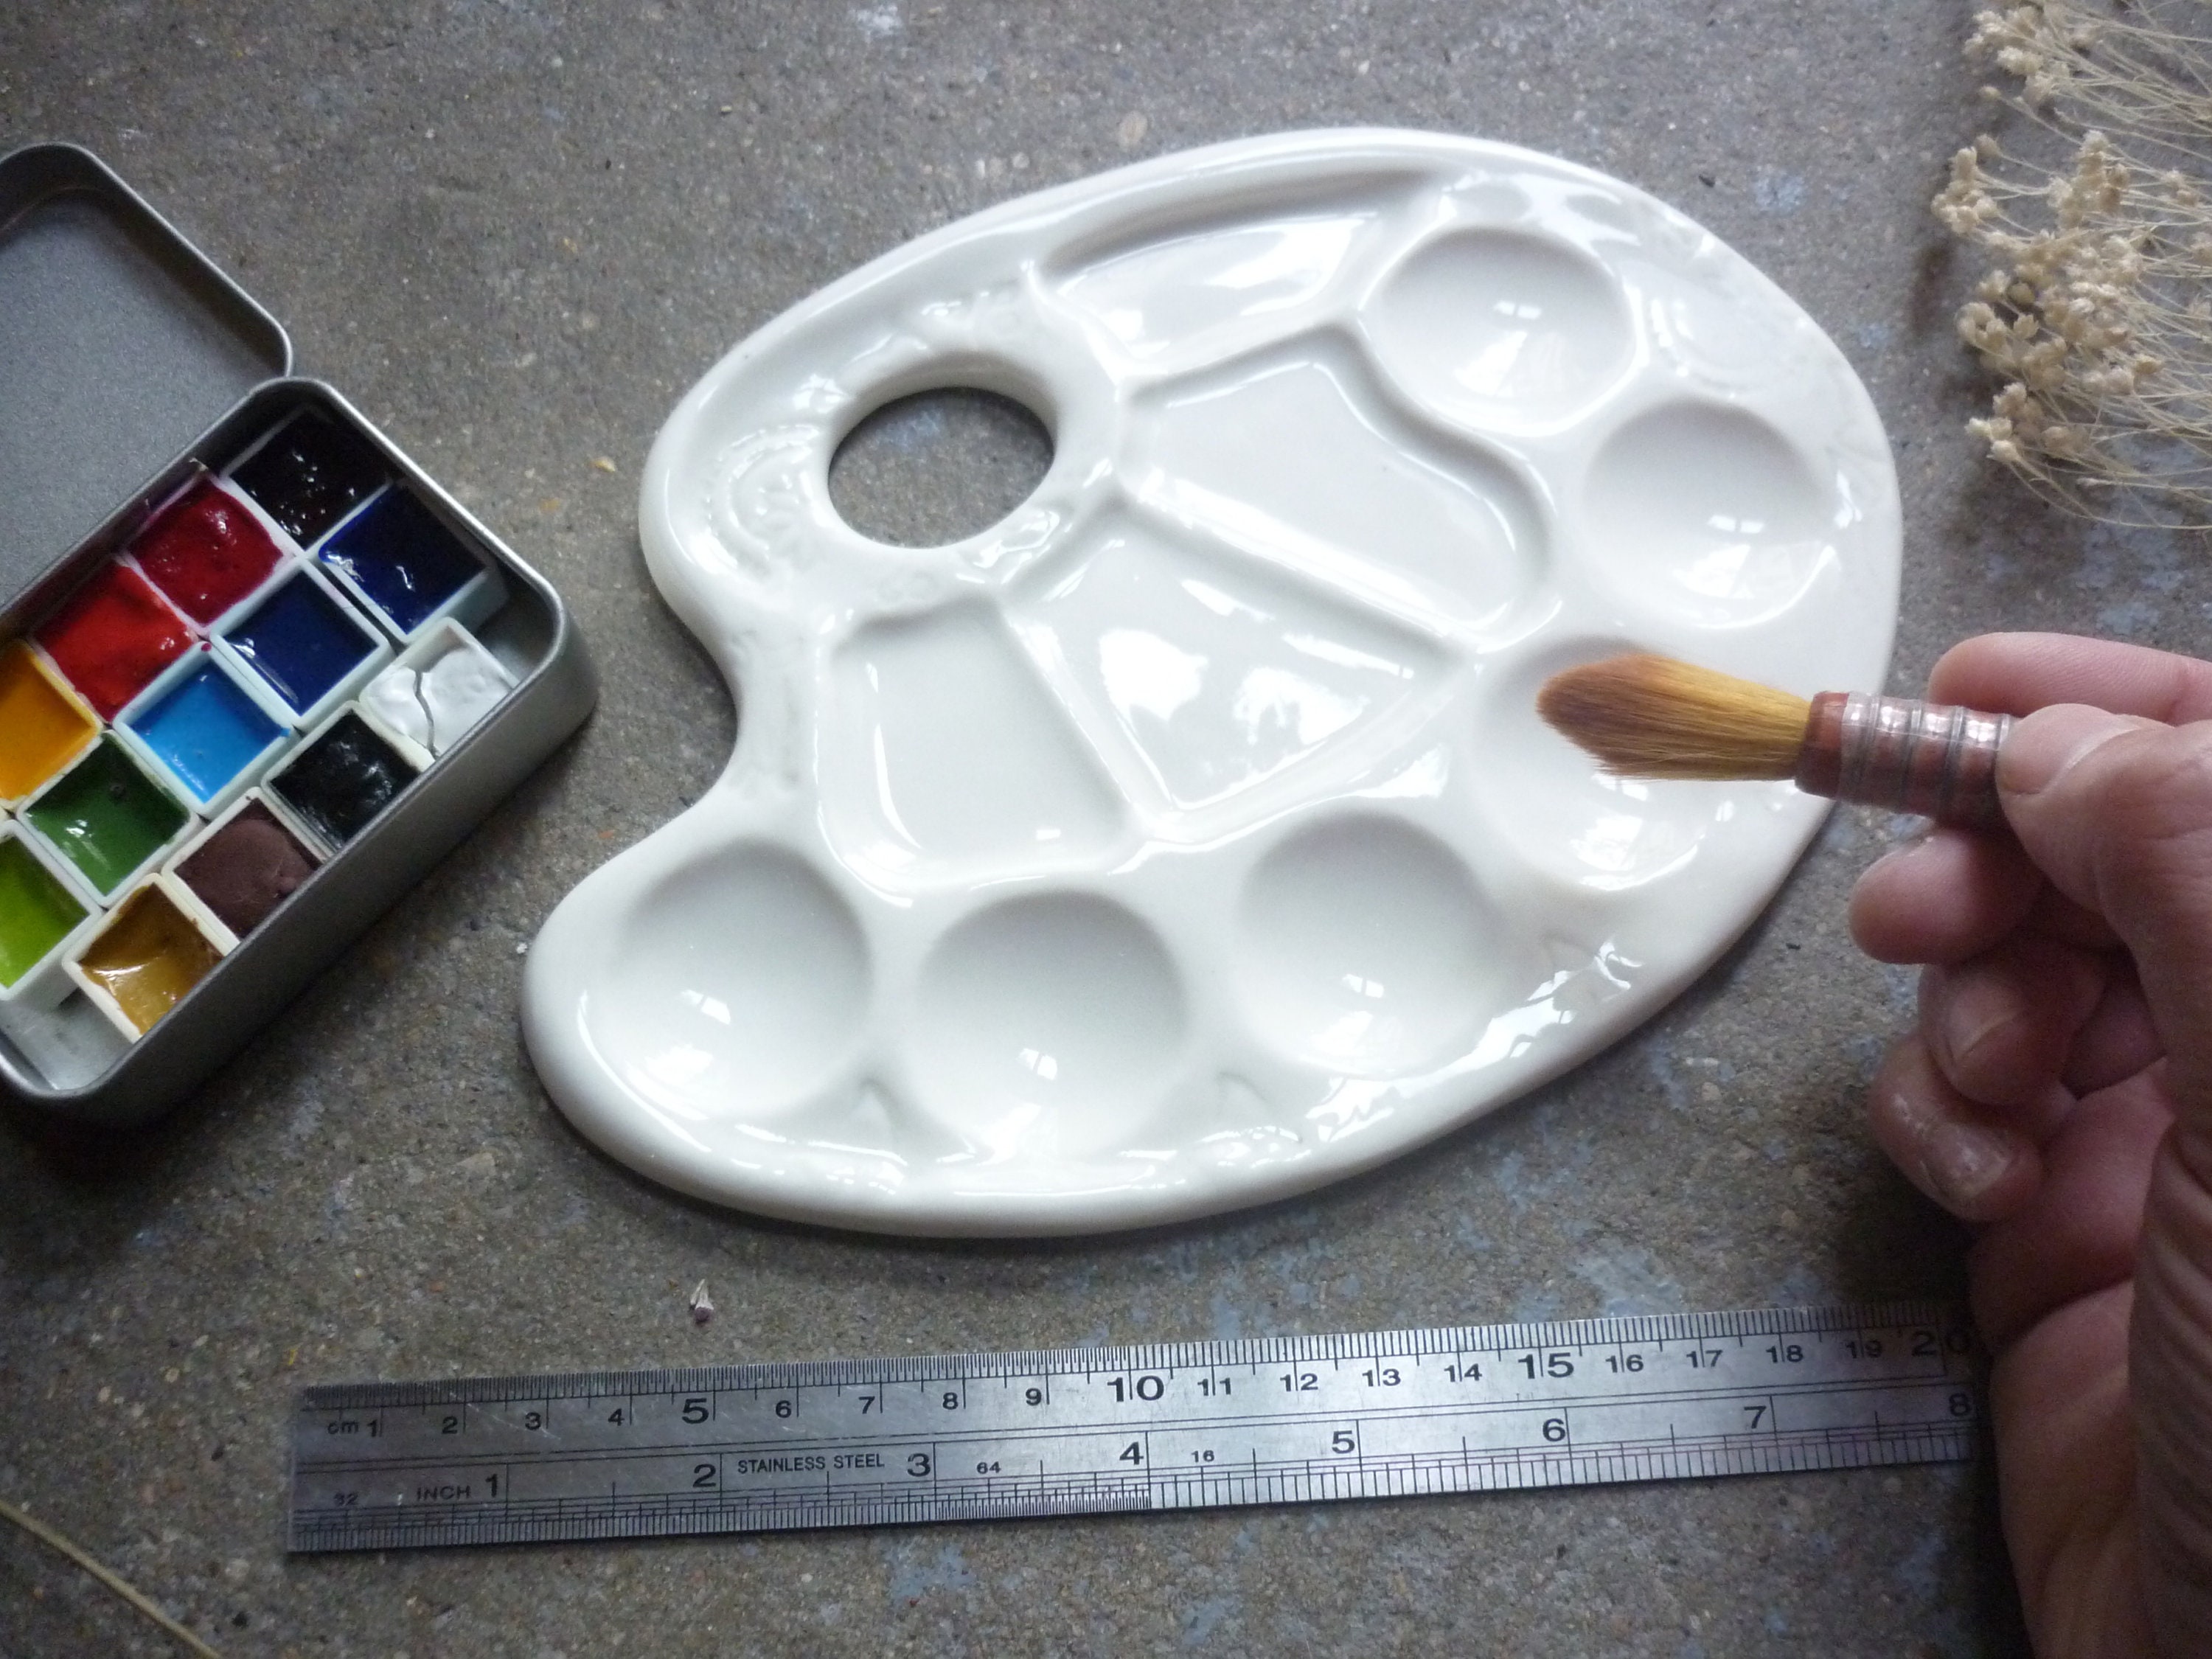 Paleta cerámica 7 agujeros A6, para mezclar acuarelas